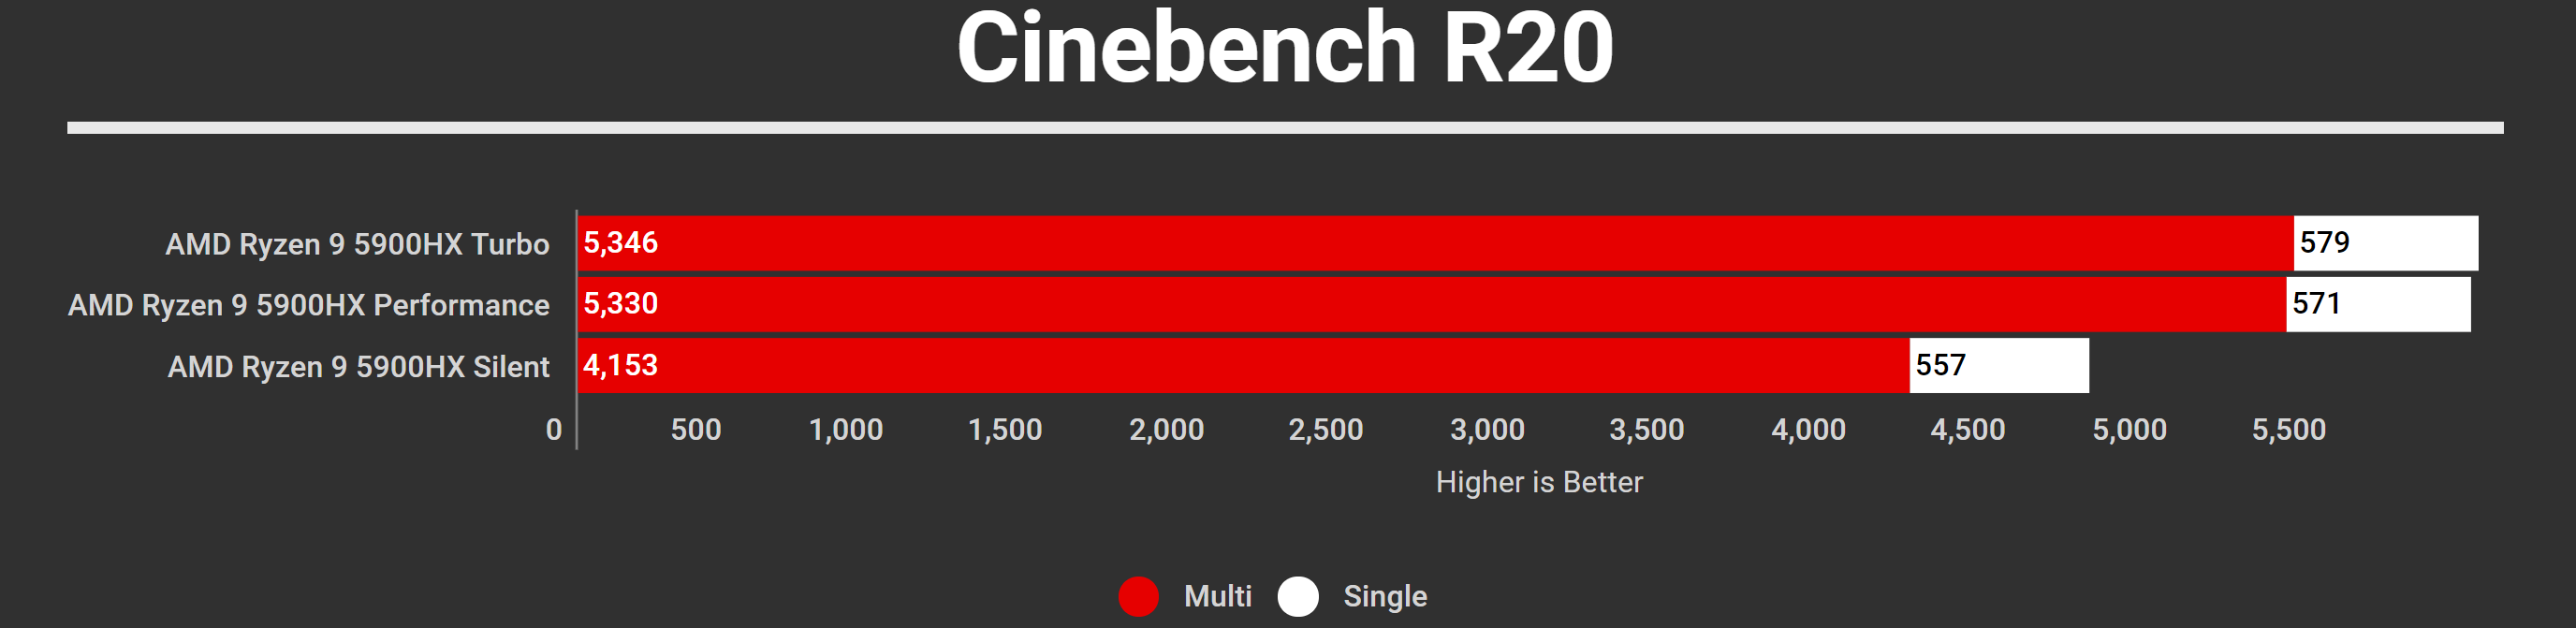 ROG Strix SCAR 15 2021 Cinebench R20